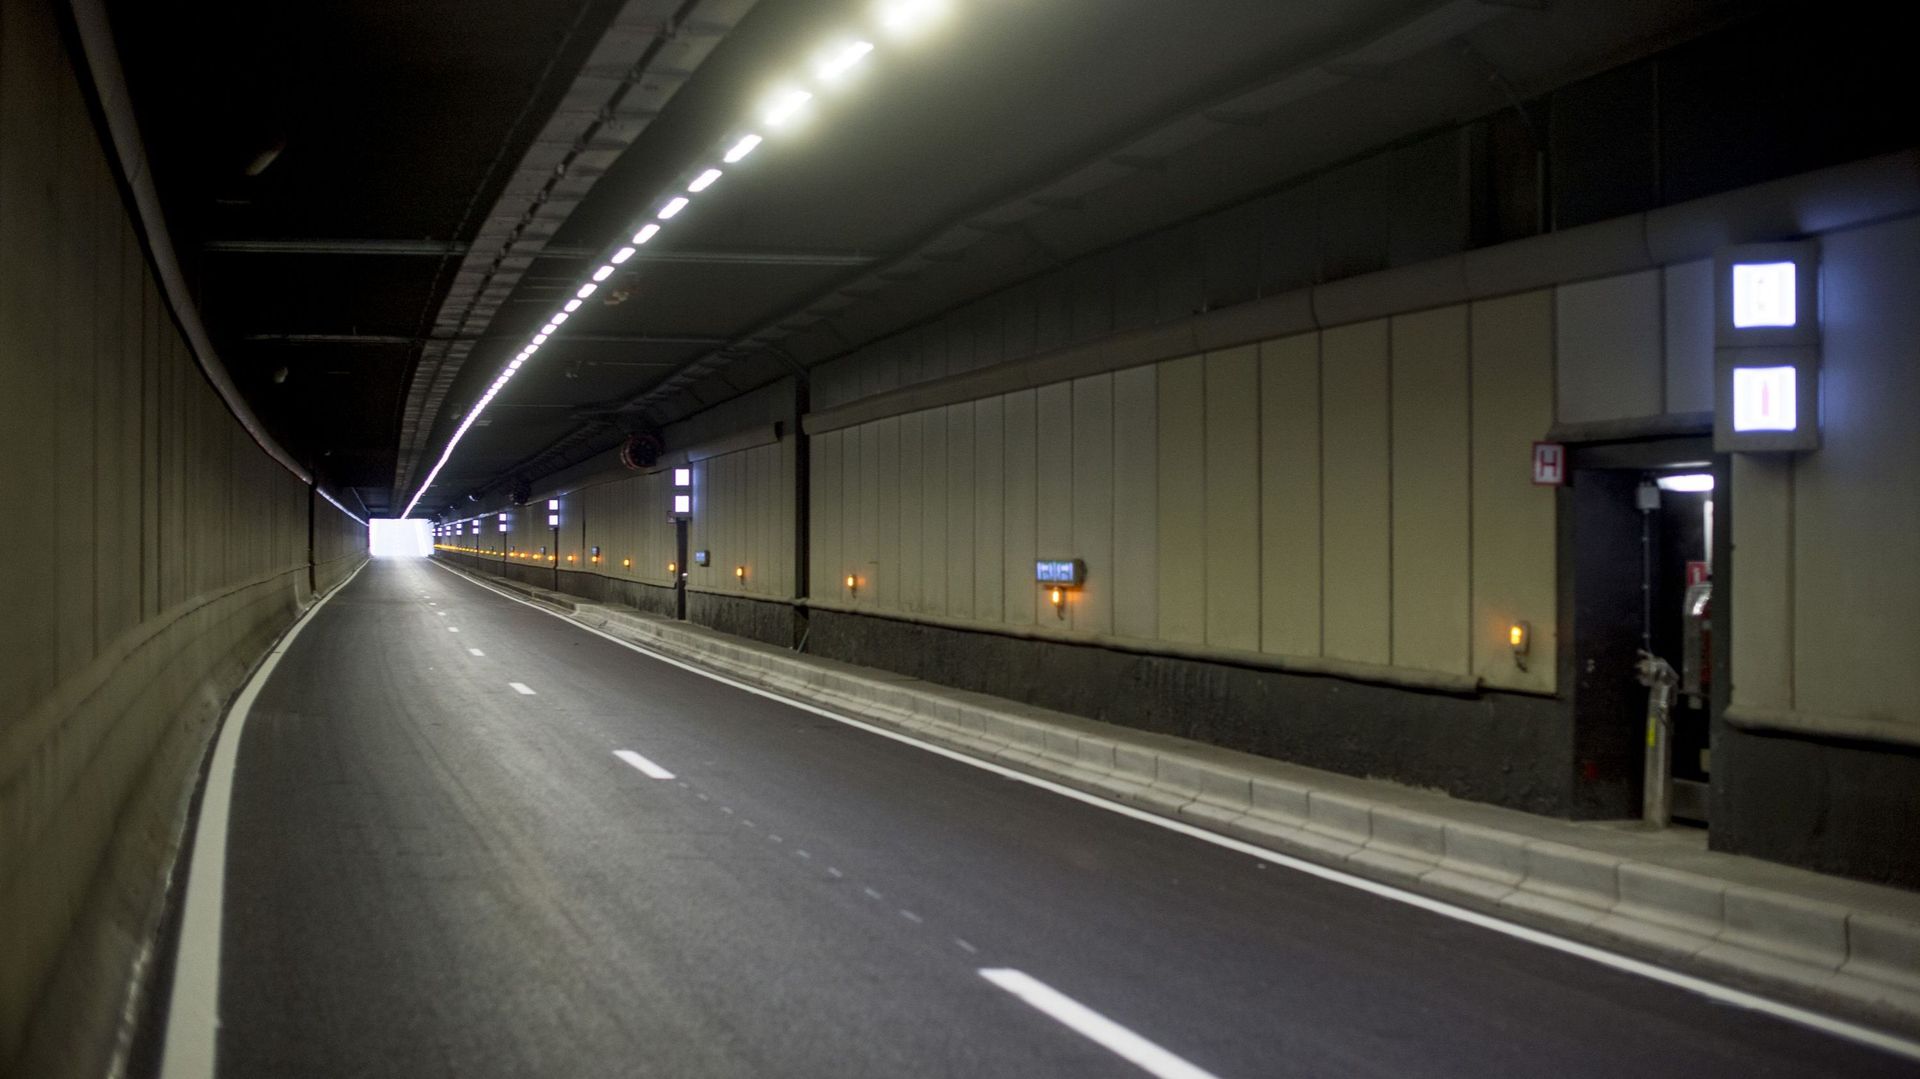 Un accident a provoqué la fermeture du tunnel Reyers vers le centre (image prétexte)